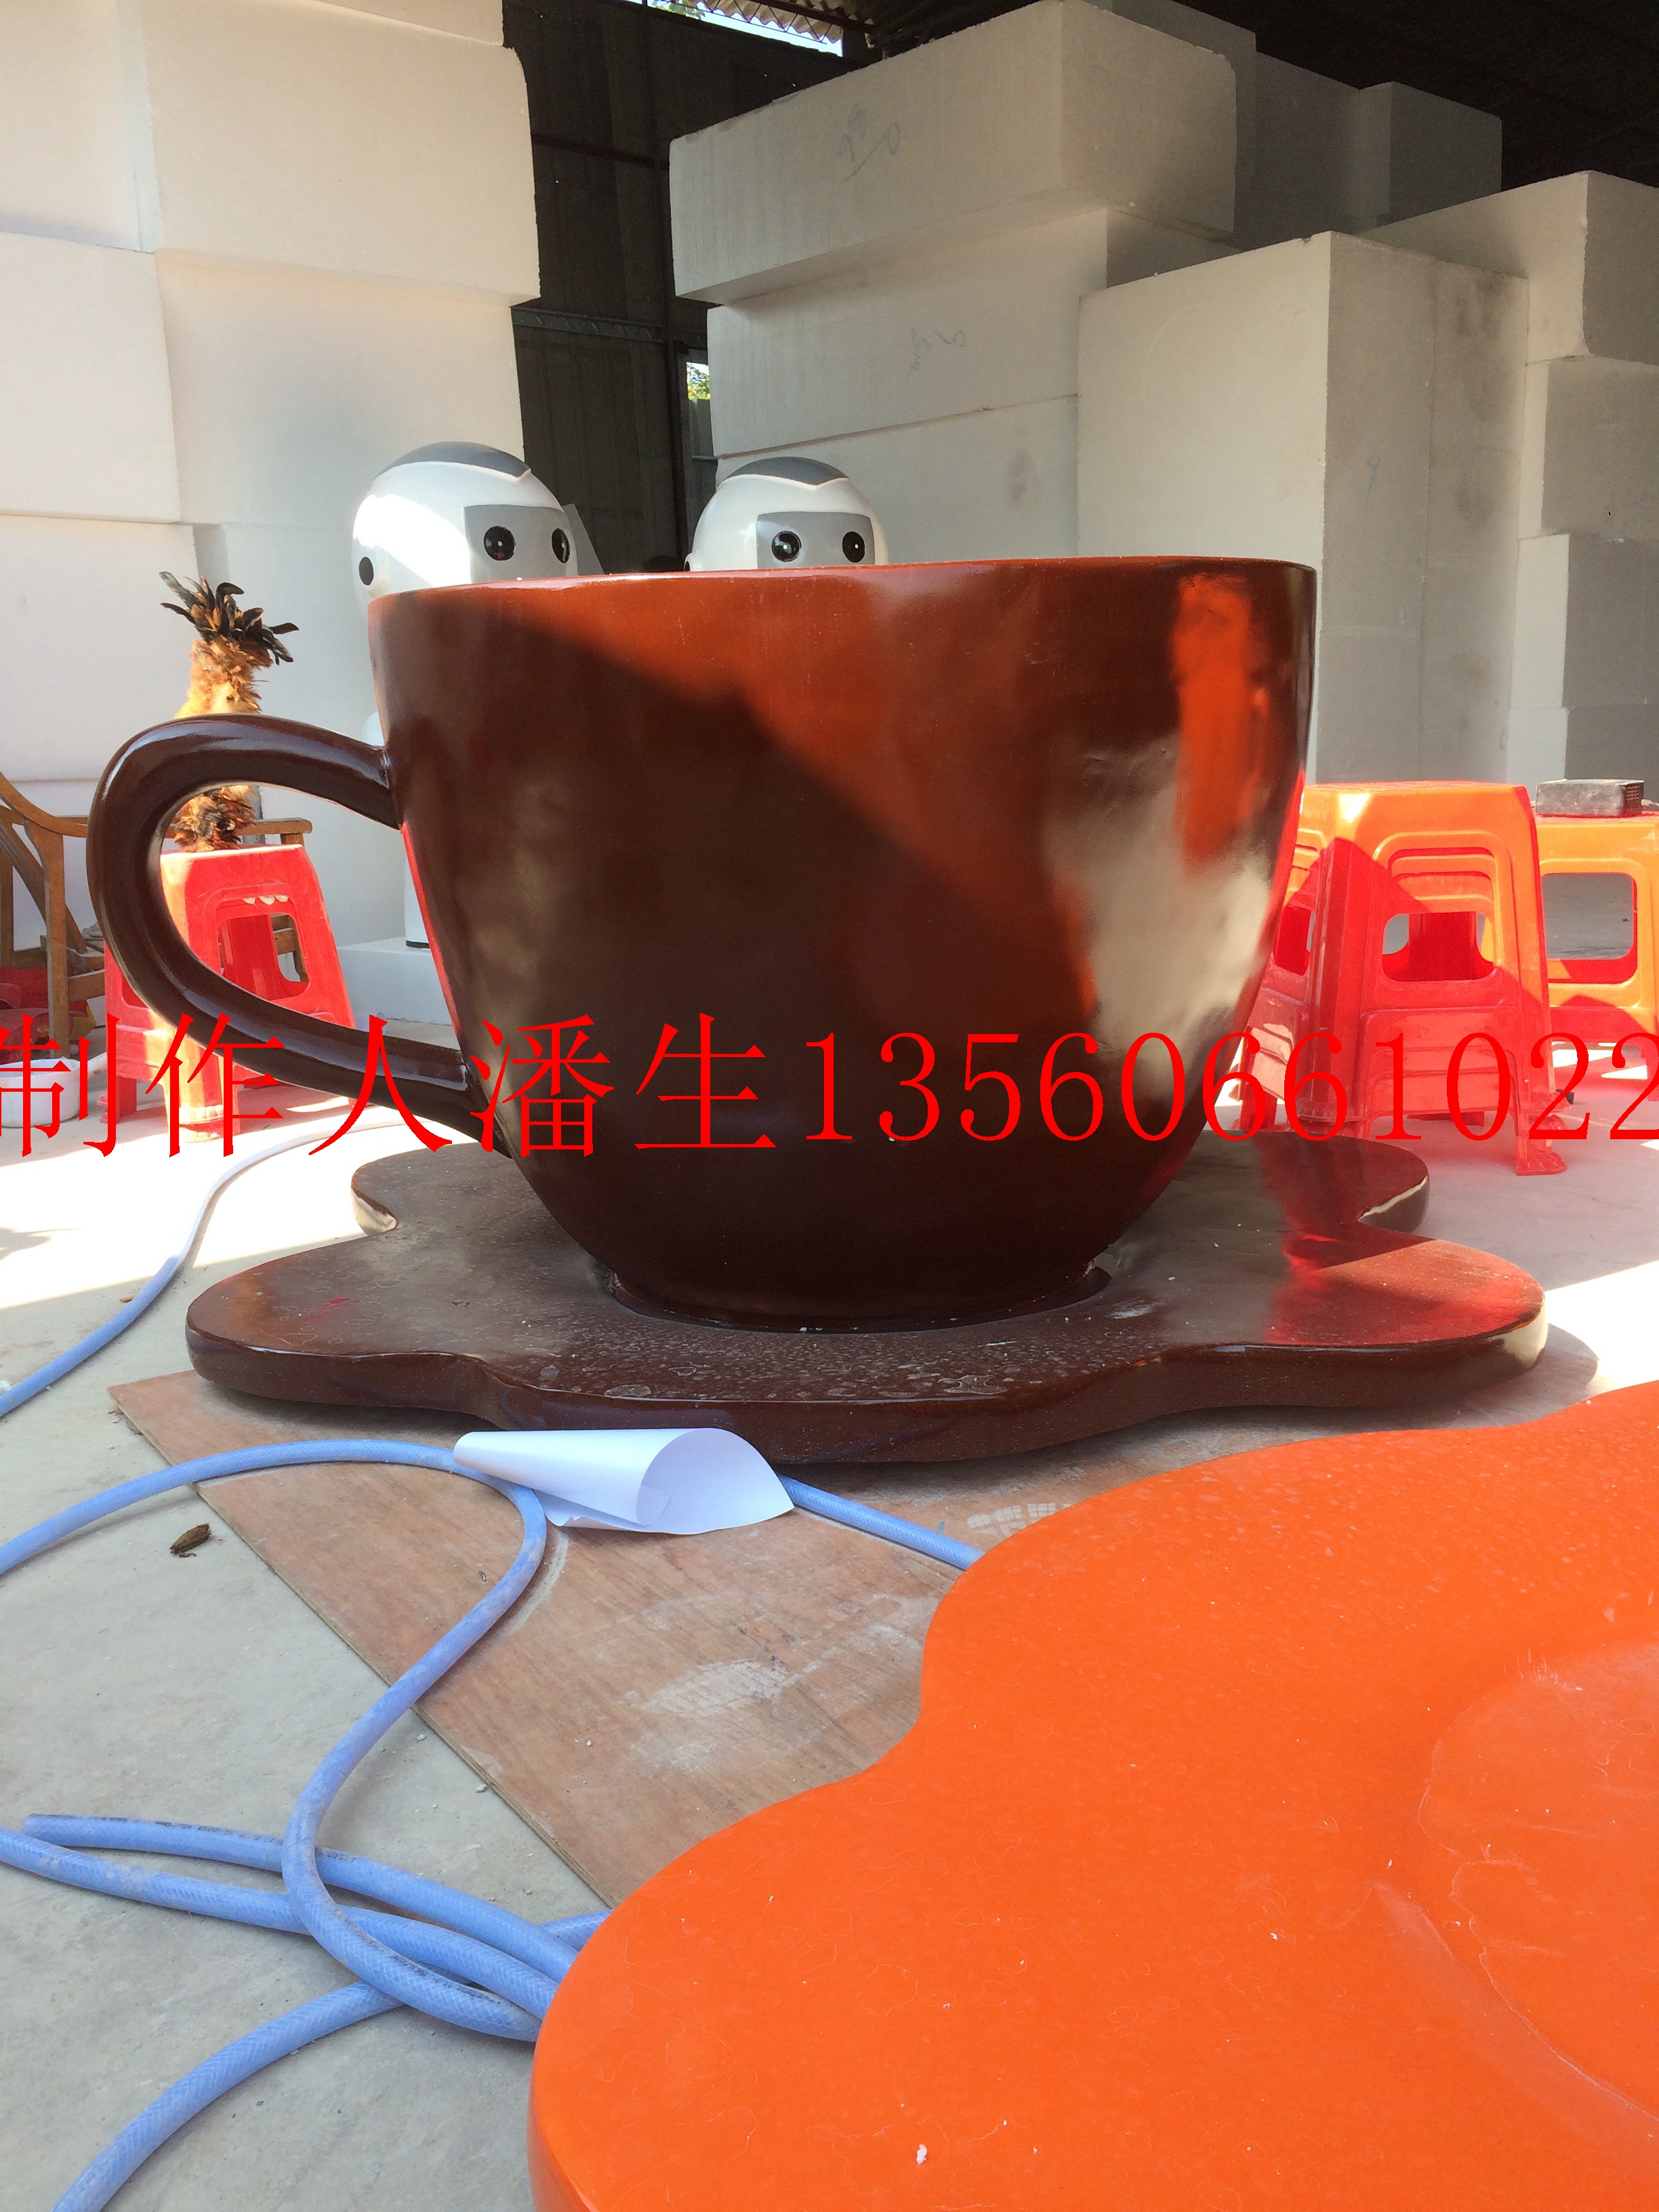 中山市佛山玻璃钢咖啡杯造型雕塑定做电话厂家